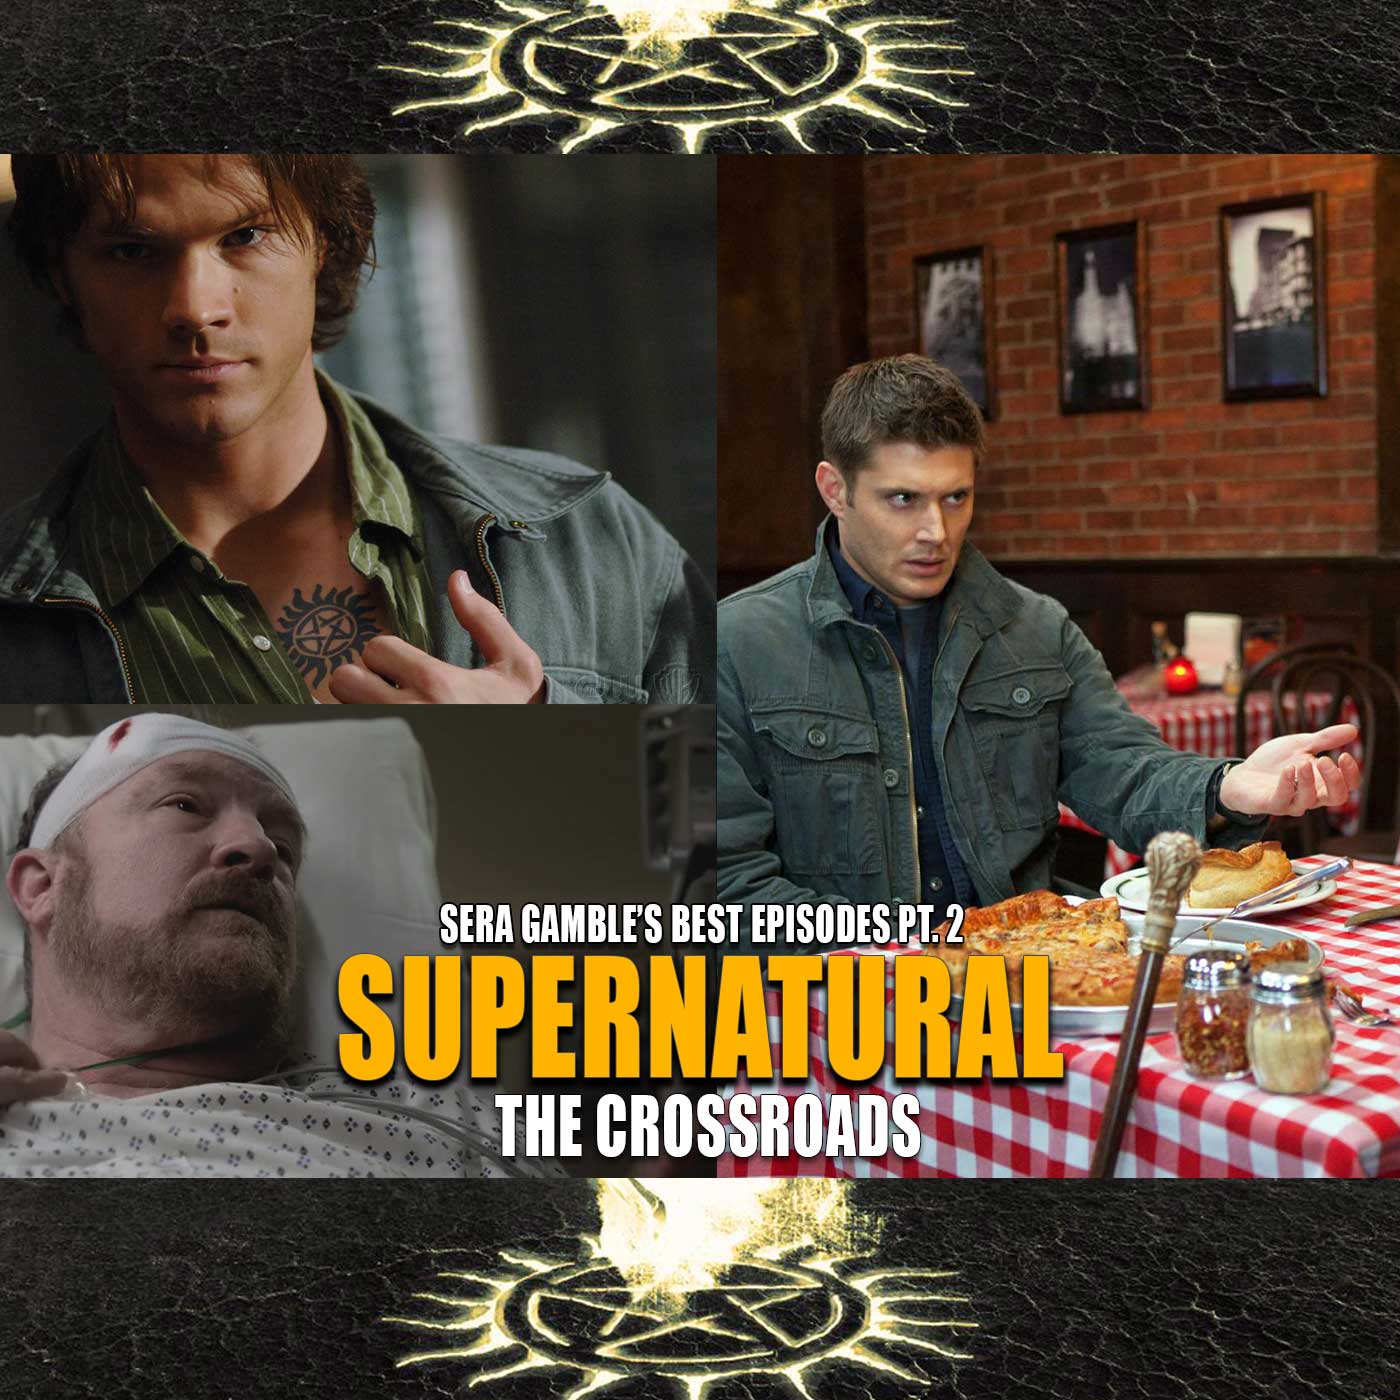 Sera Gamble’s Writing on Supernatural (Top 5 Episodes) – Pt. 2